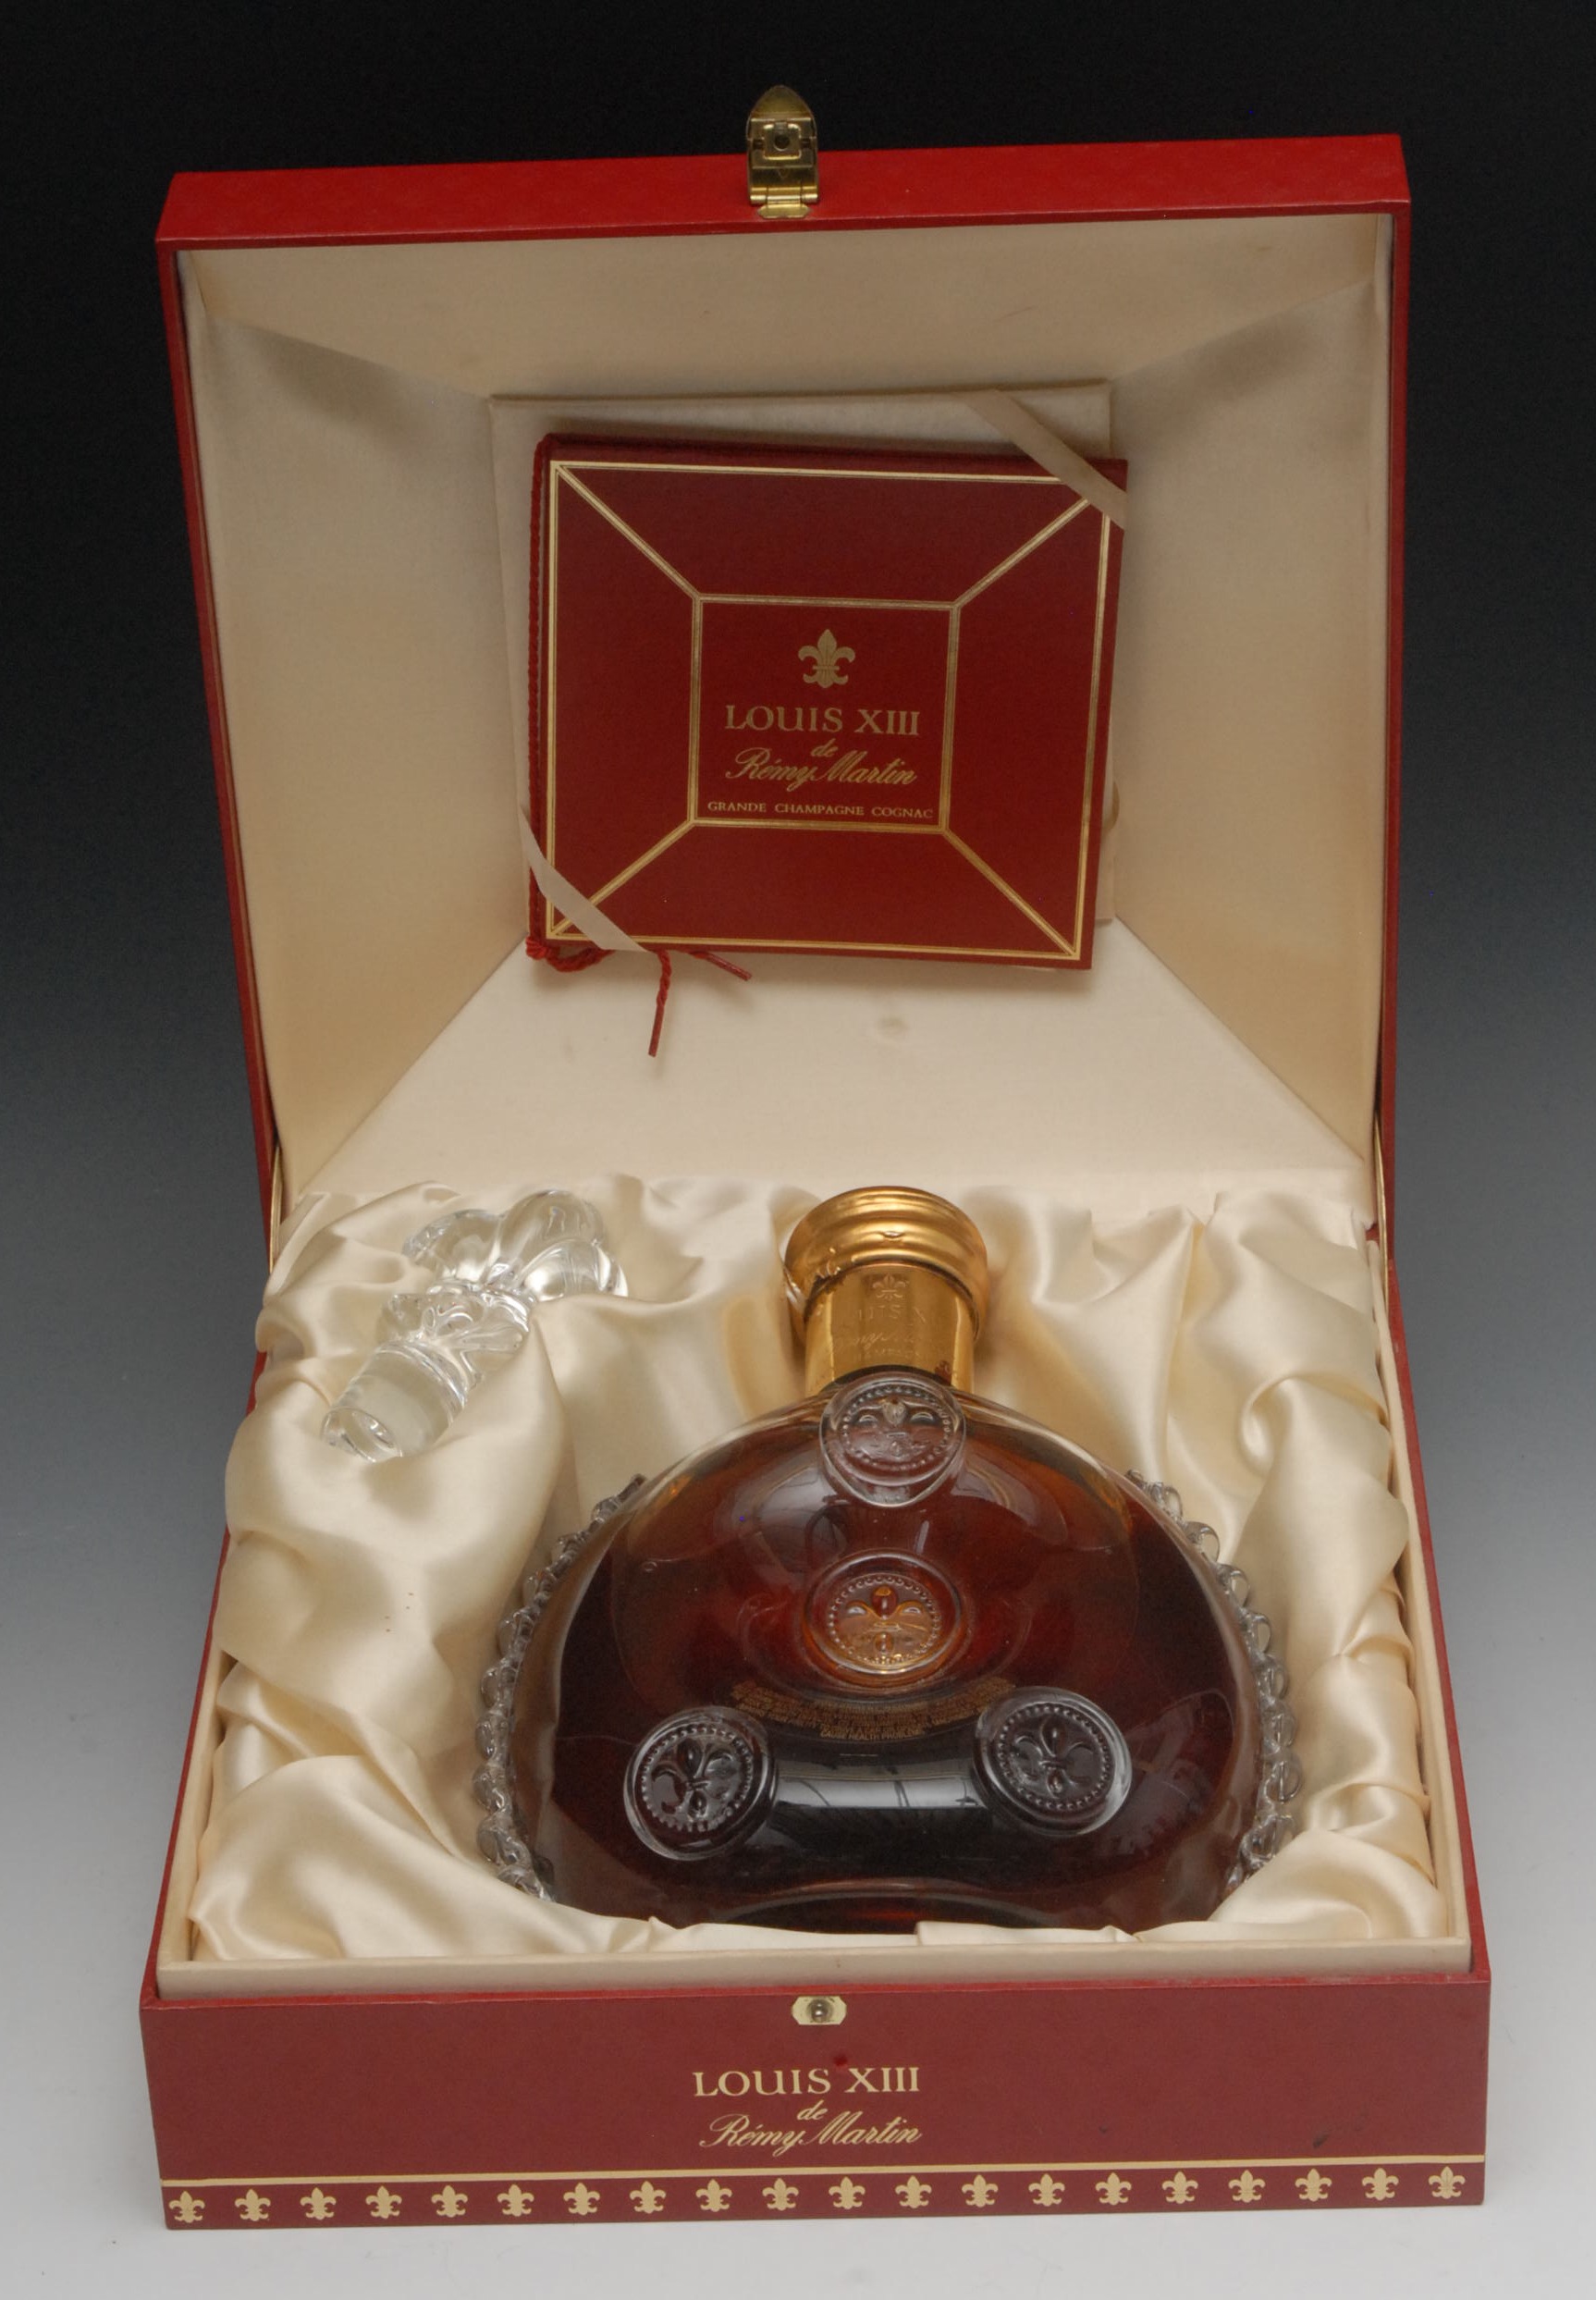 Cognac Louis XIII Remy Martin Grande Champagne Cognac Carafe No 3311, Baccarat Crystal Carafe, in